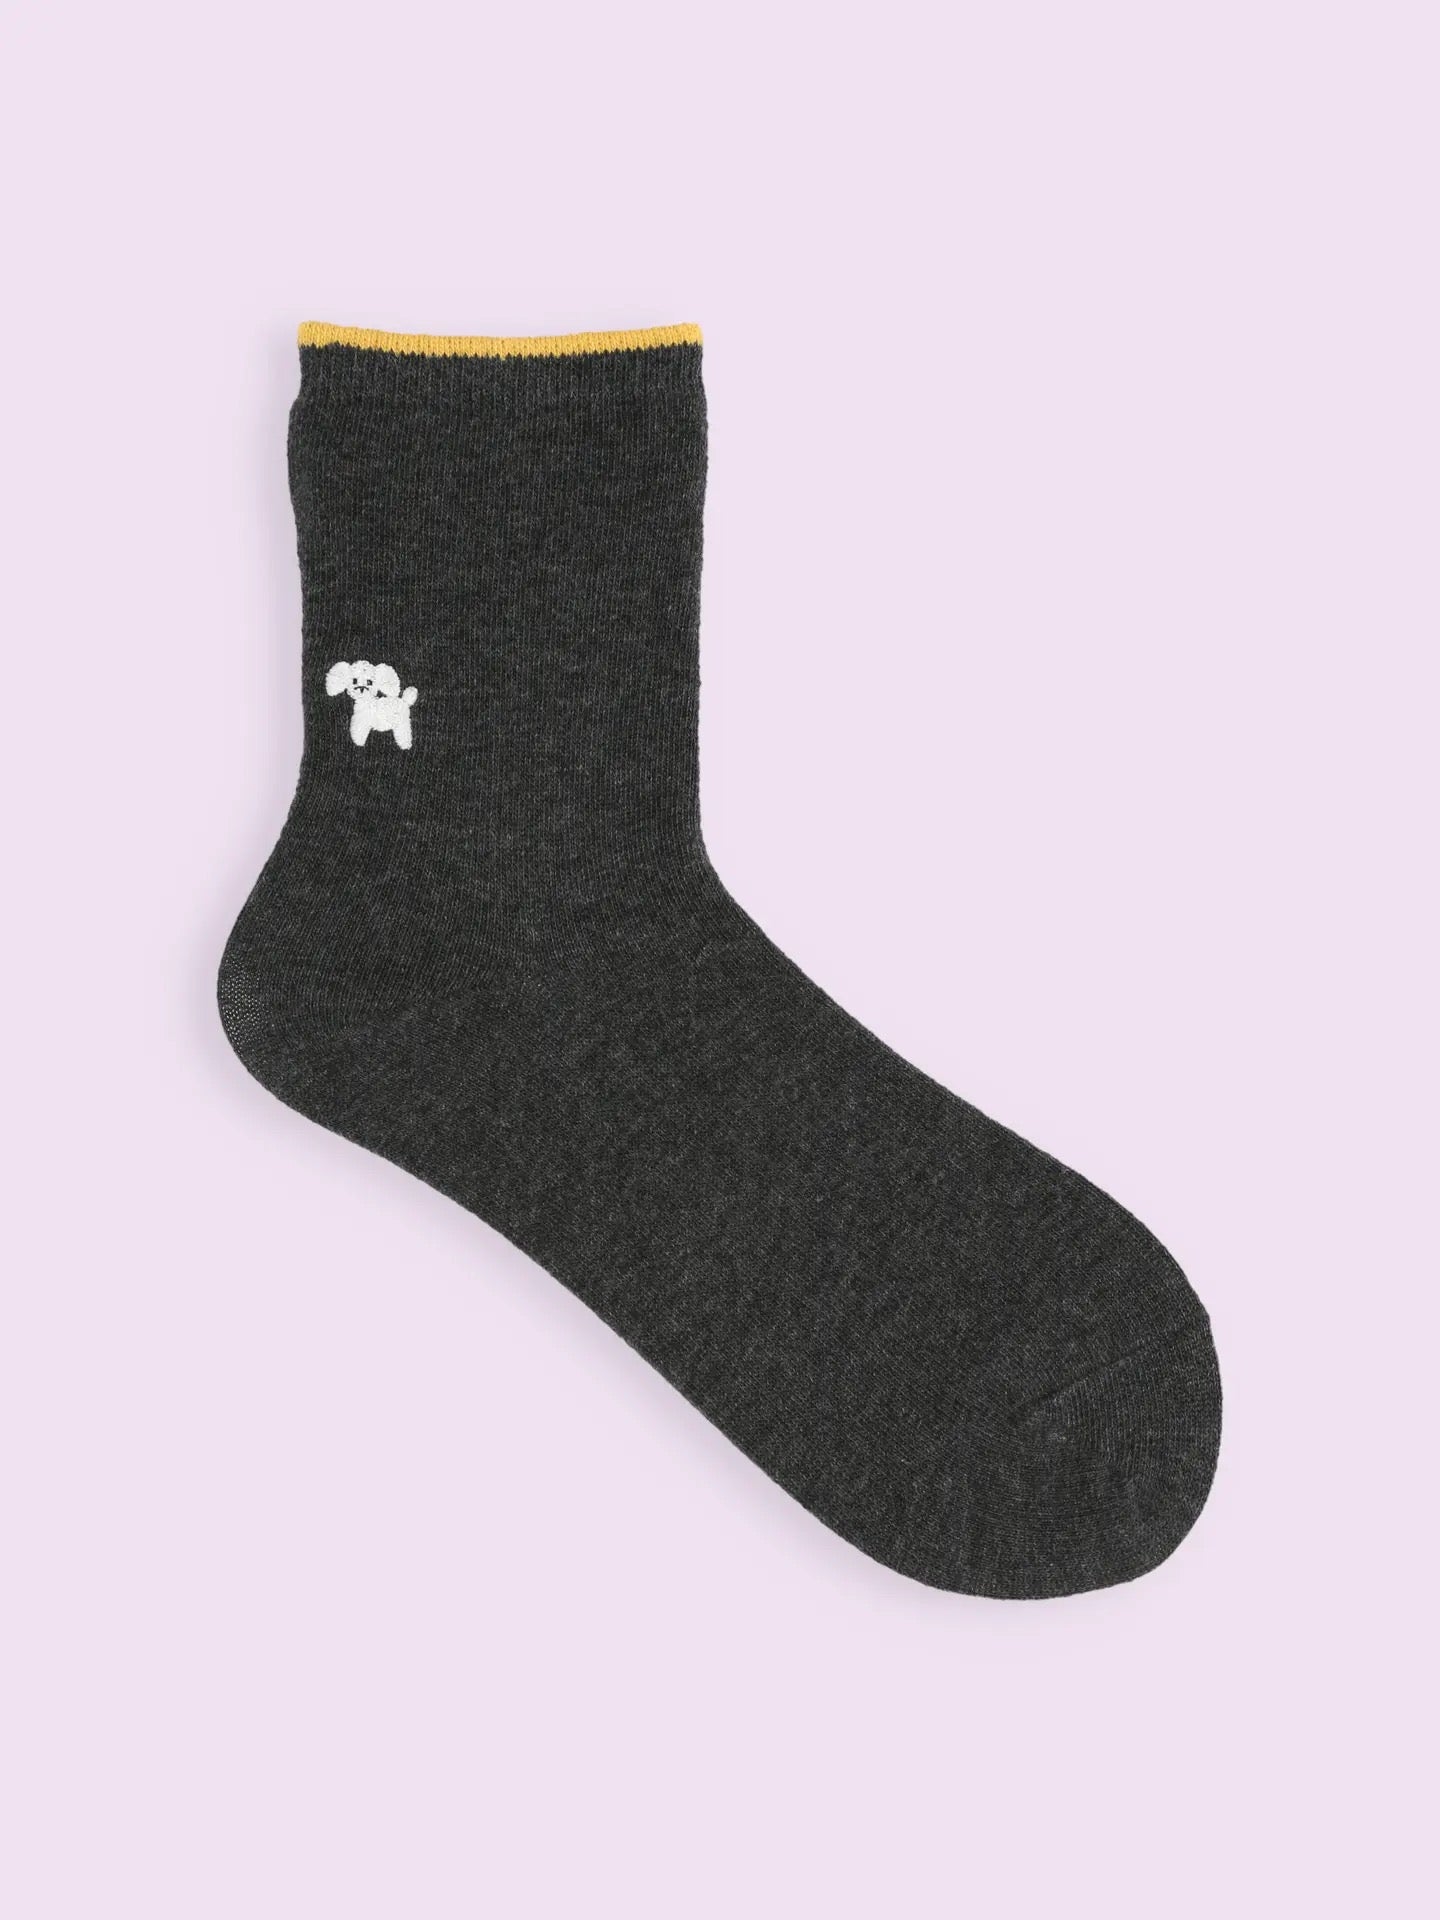 靴下屋Tabio小动物图案刺绣舒适短筒袜 11色选